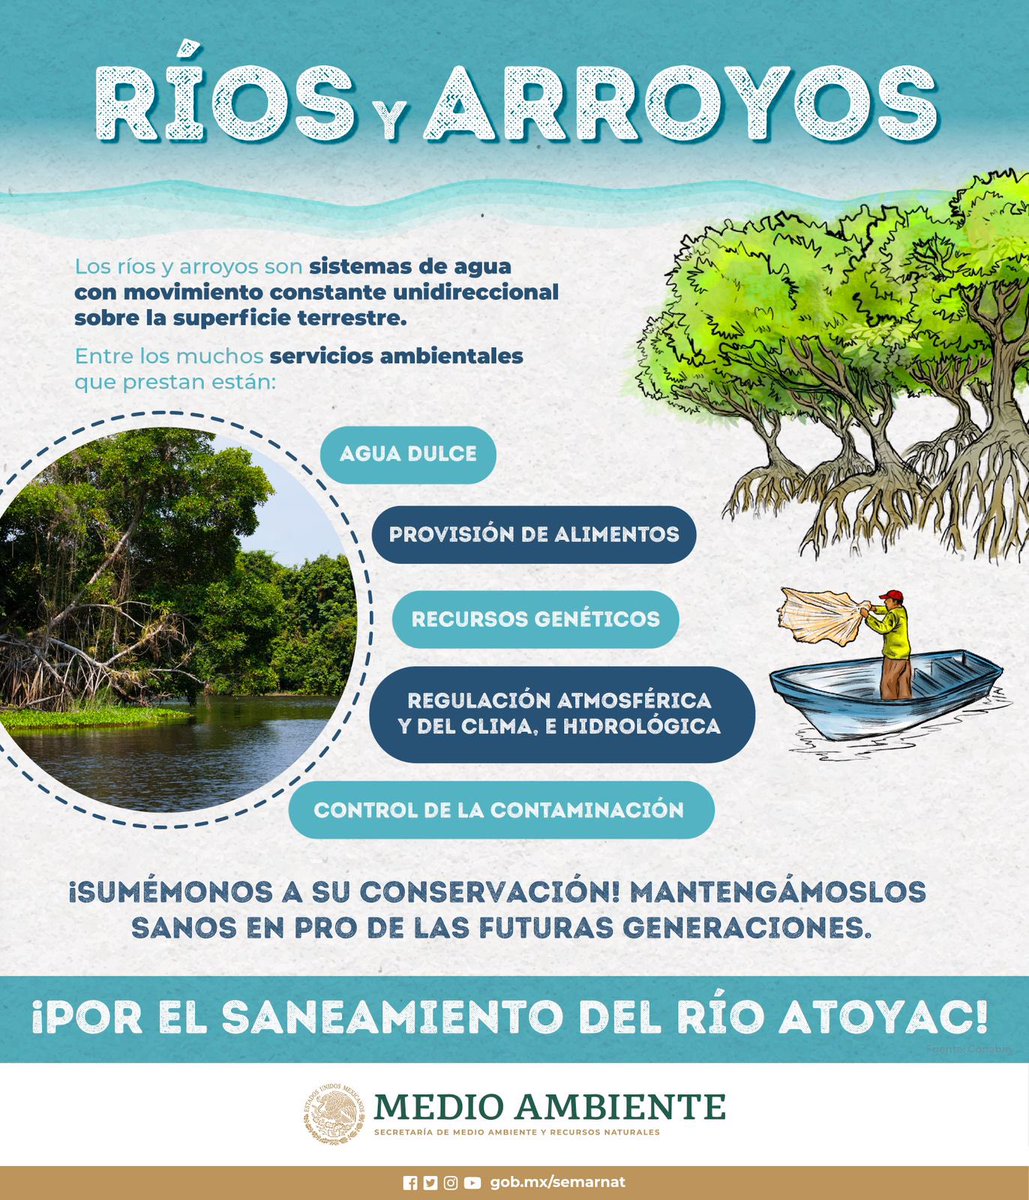 Sumémonos a la conservación de los ríos y arroyos de México. 💧💧💧 Mantengámoslos sanos en pro de las futuras generaciones.🌎🍃💦